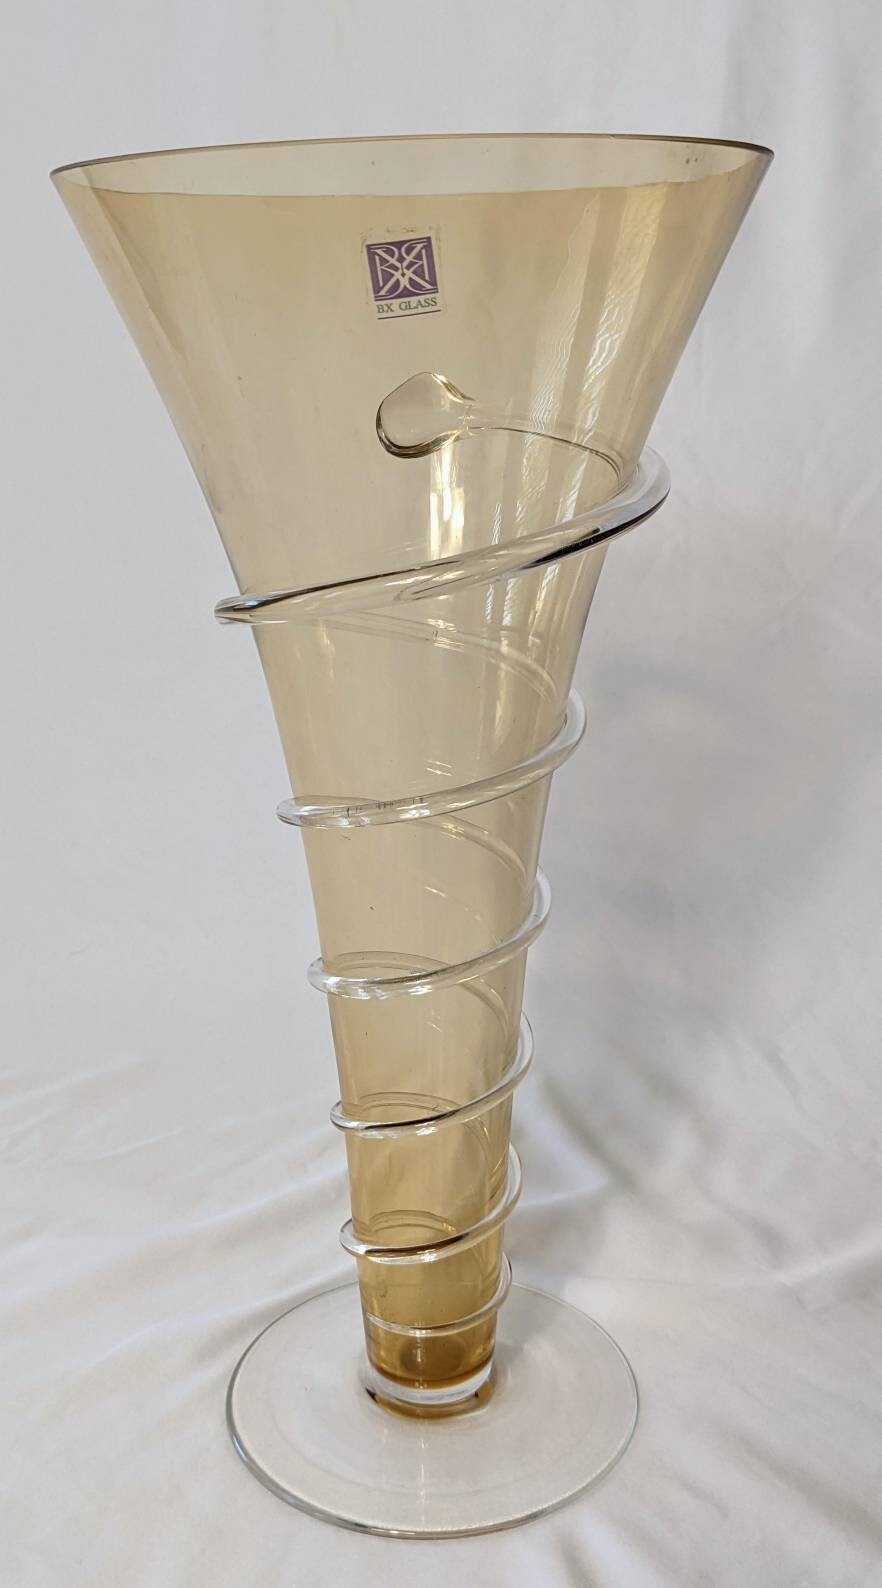 Bx Glass Vase Etsy